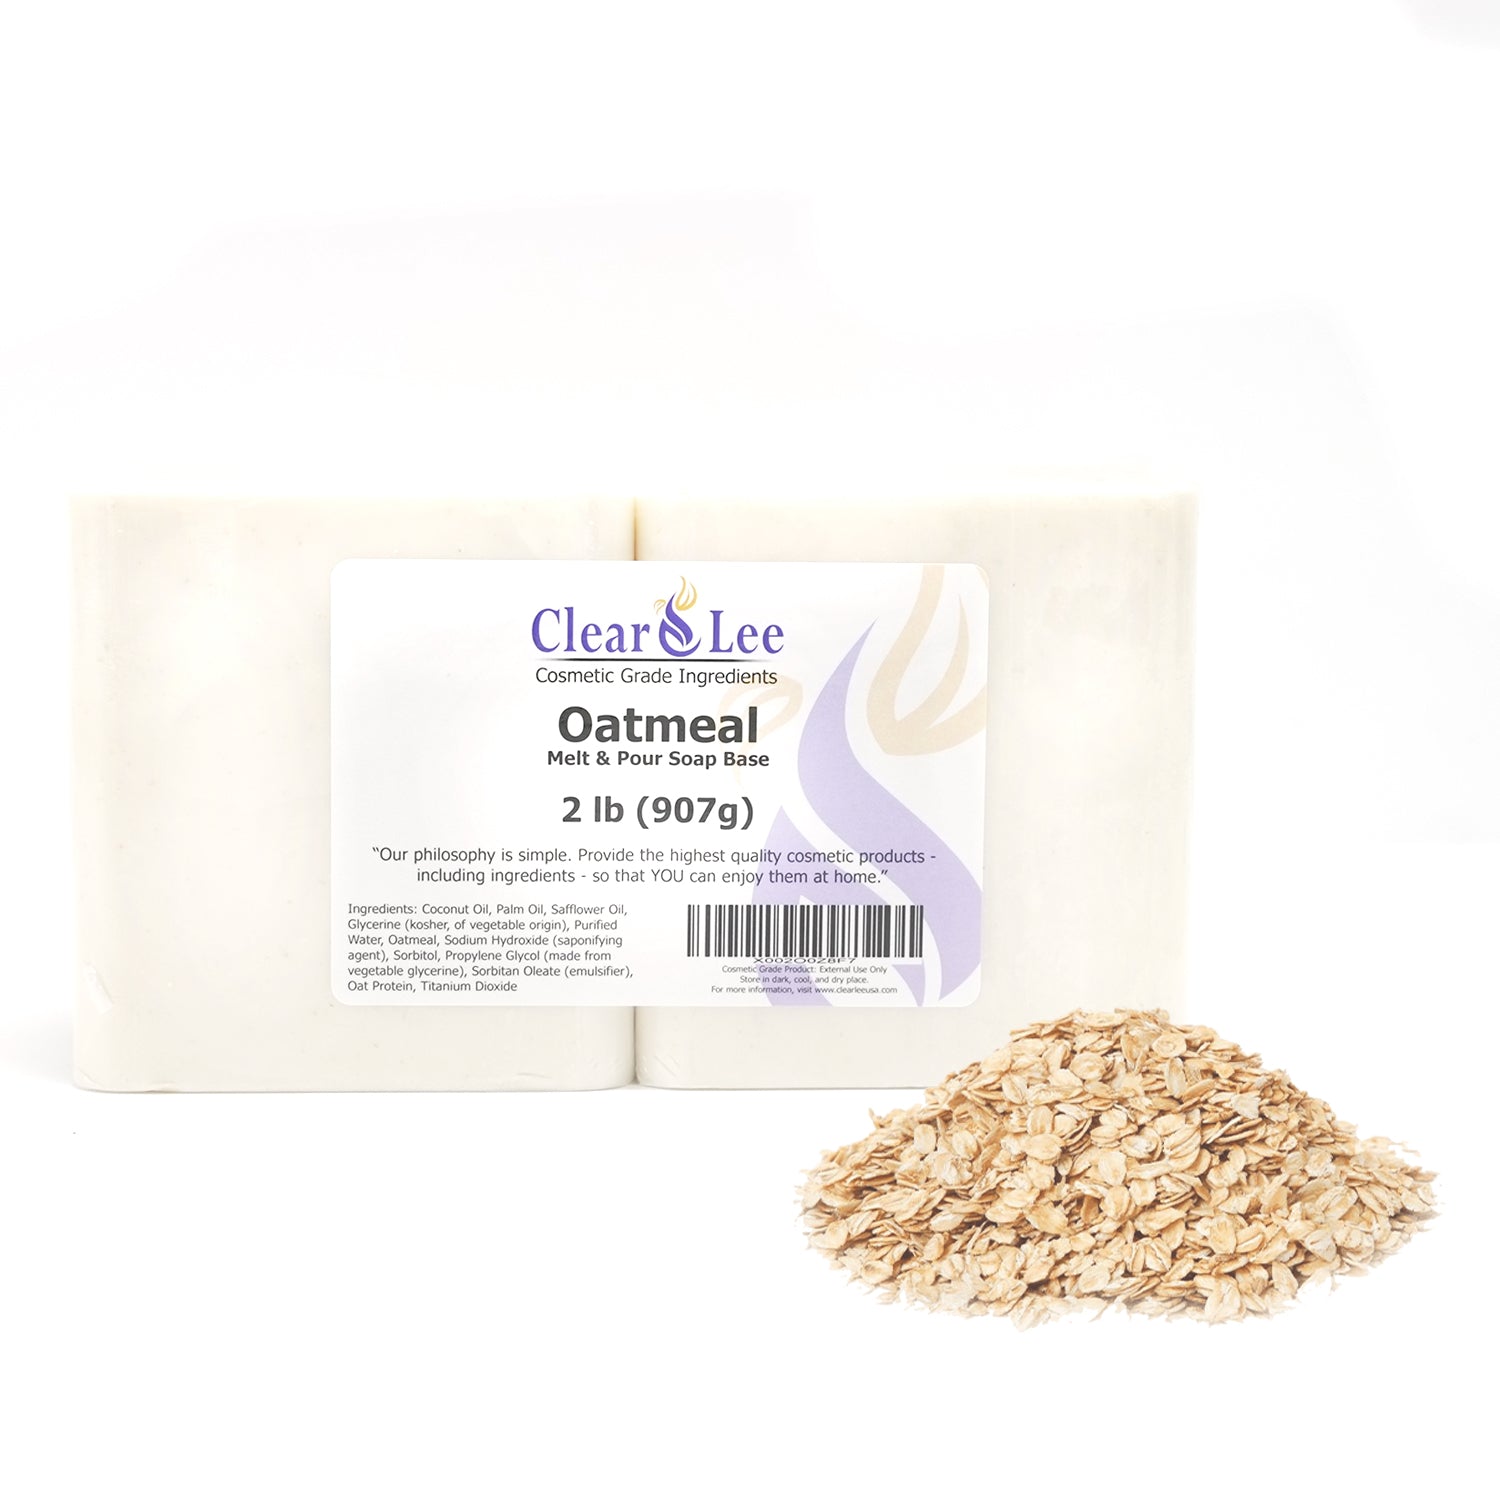 2,4,5,10,25 LB - Oatmeal Soap Base by Velona